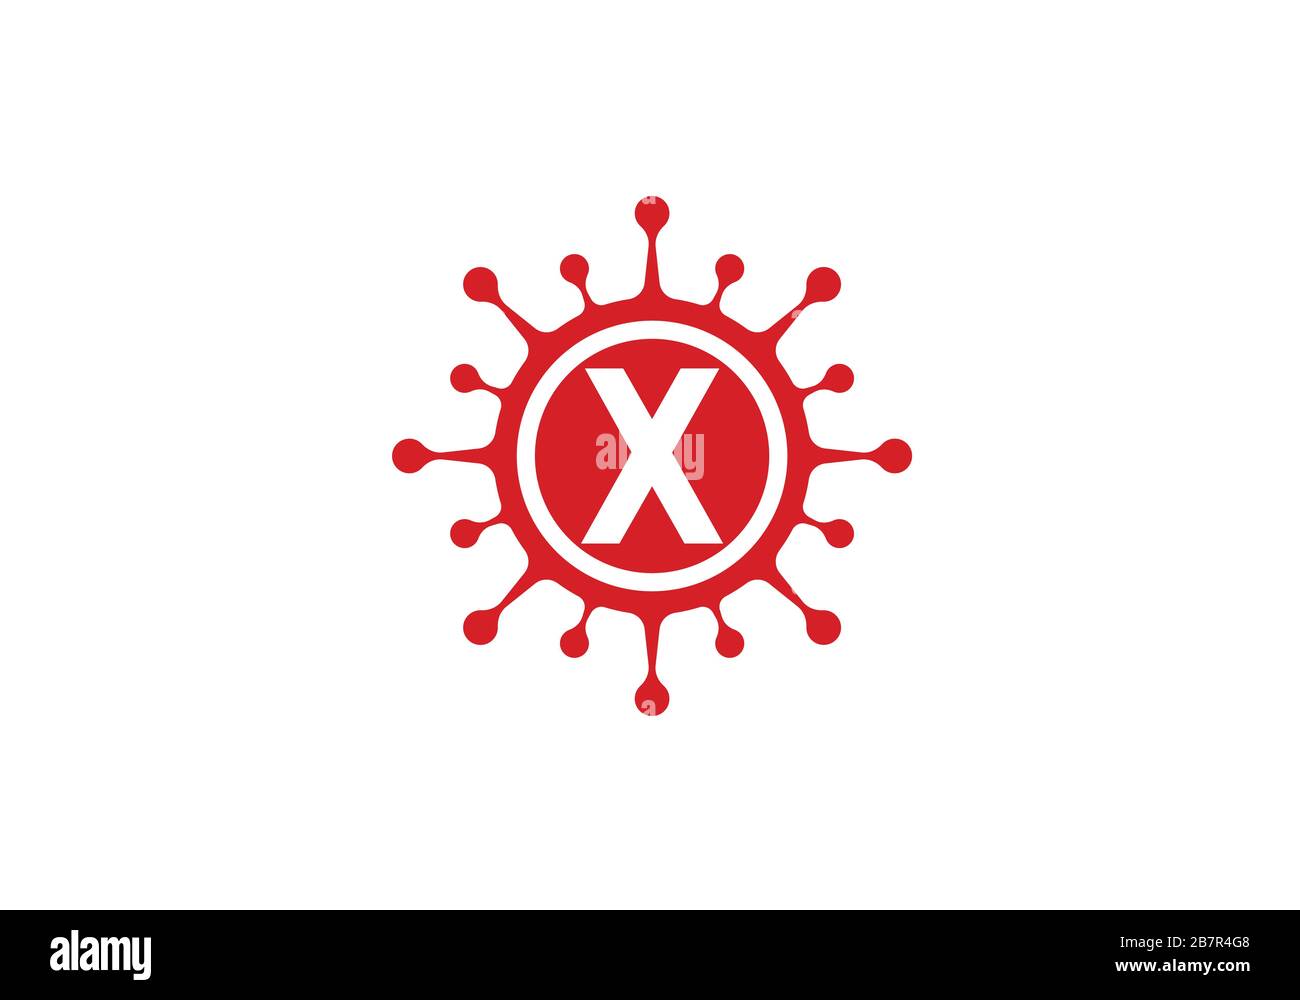 Corona virus cellule logo simbolo disegno vettore illustrazione. Coronavirus (Covid-19). Fermata Coronavirus Illustrazione Vettoriale